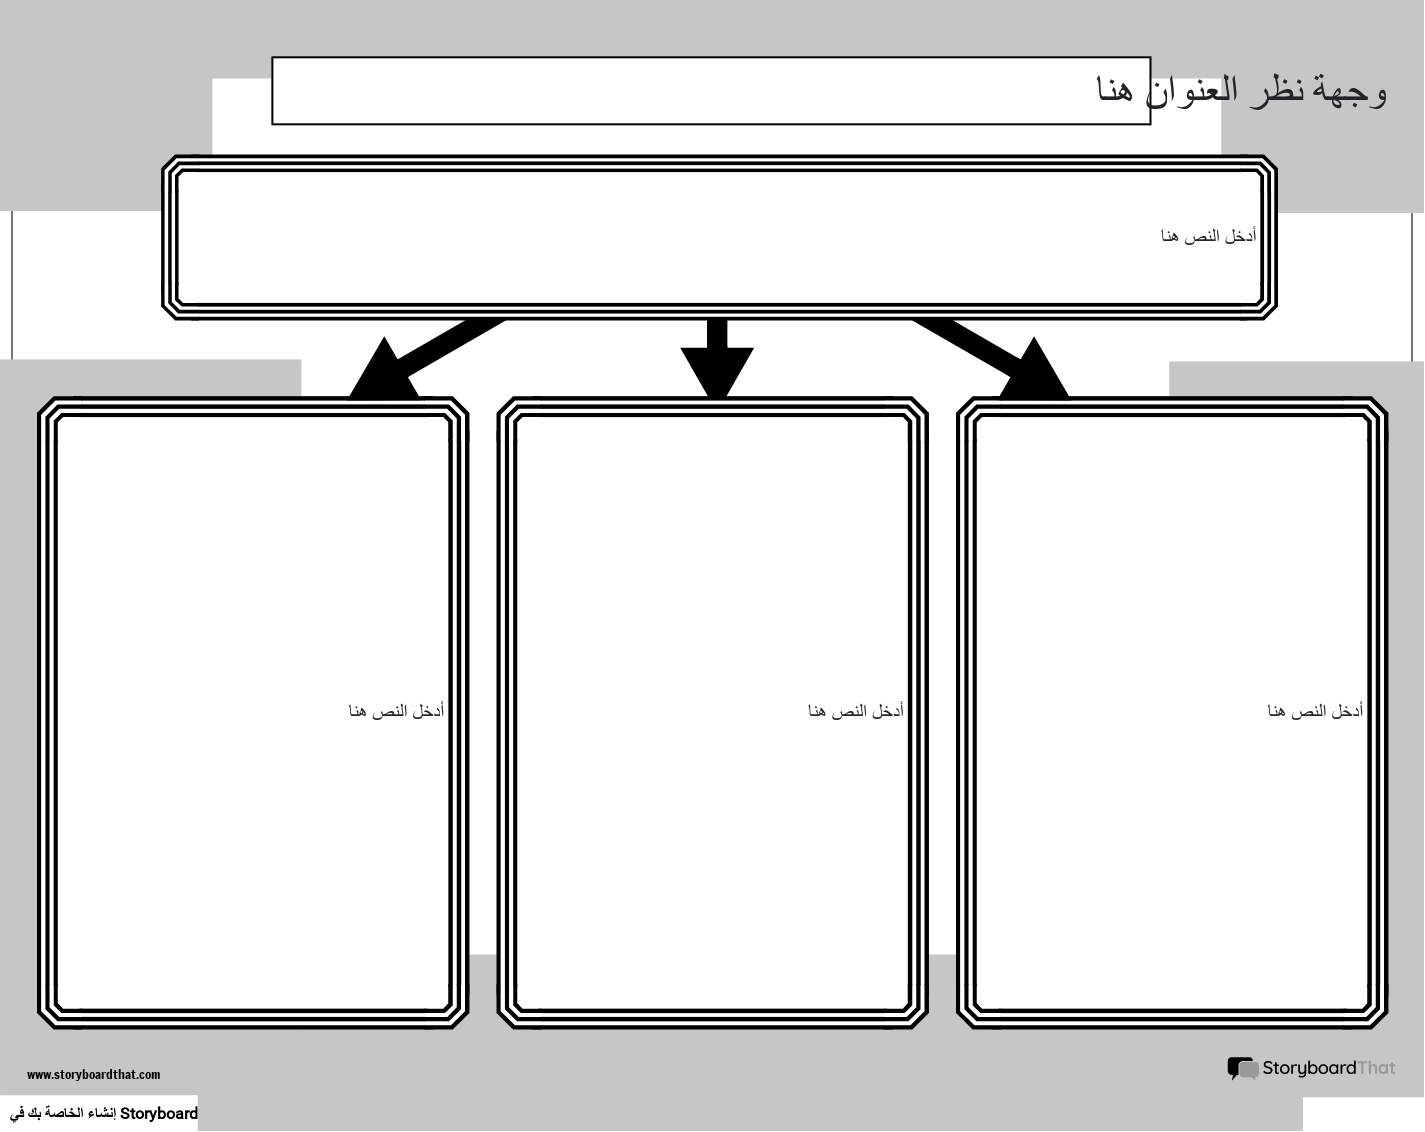 إنشاء نقطة عرض جديدة للصفحة ، النموذج 2 (أبيض وأسود)